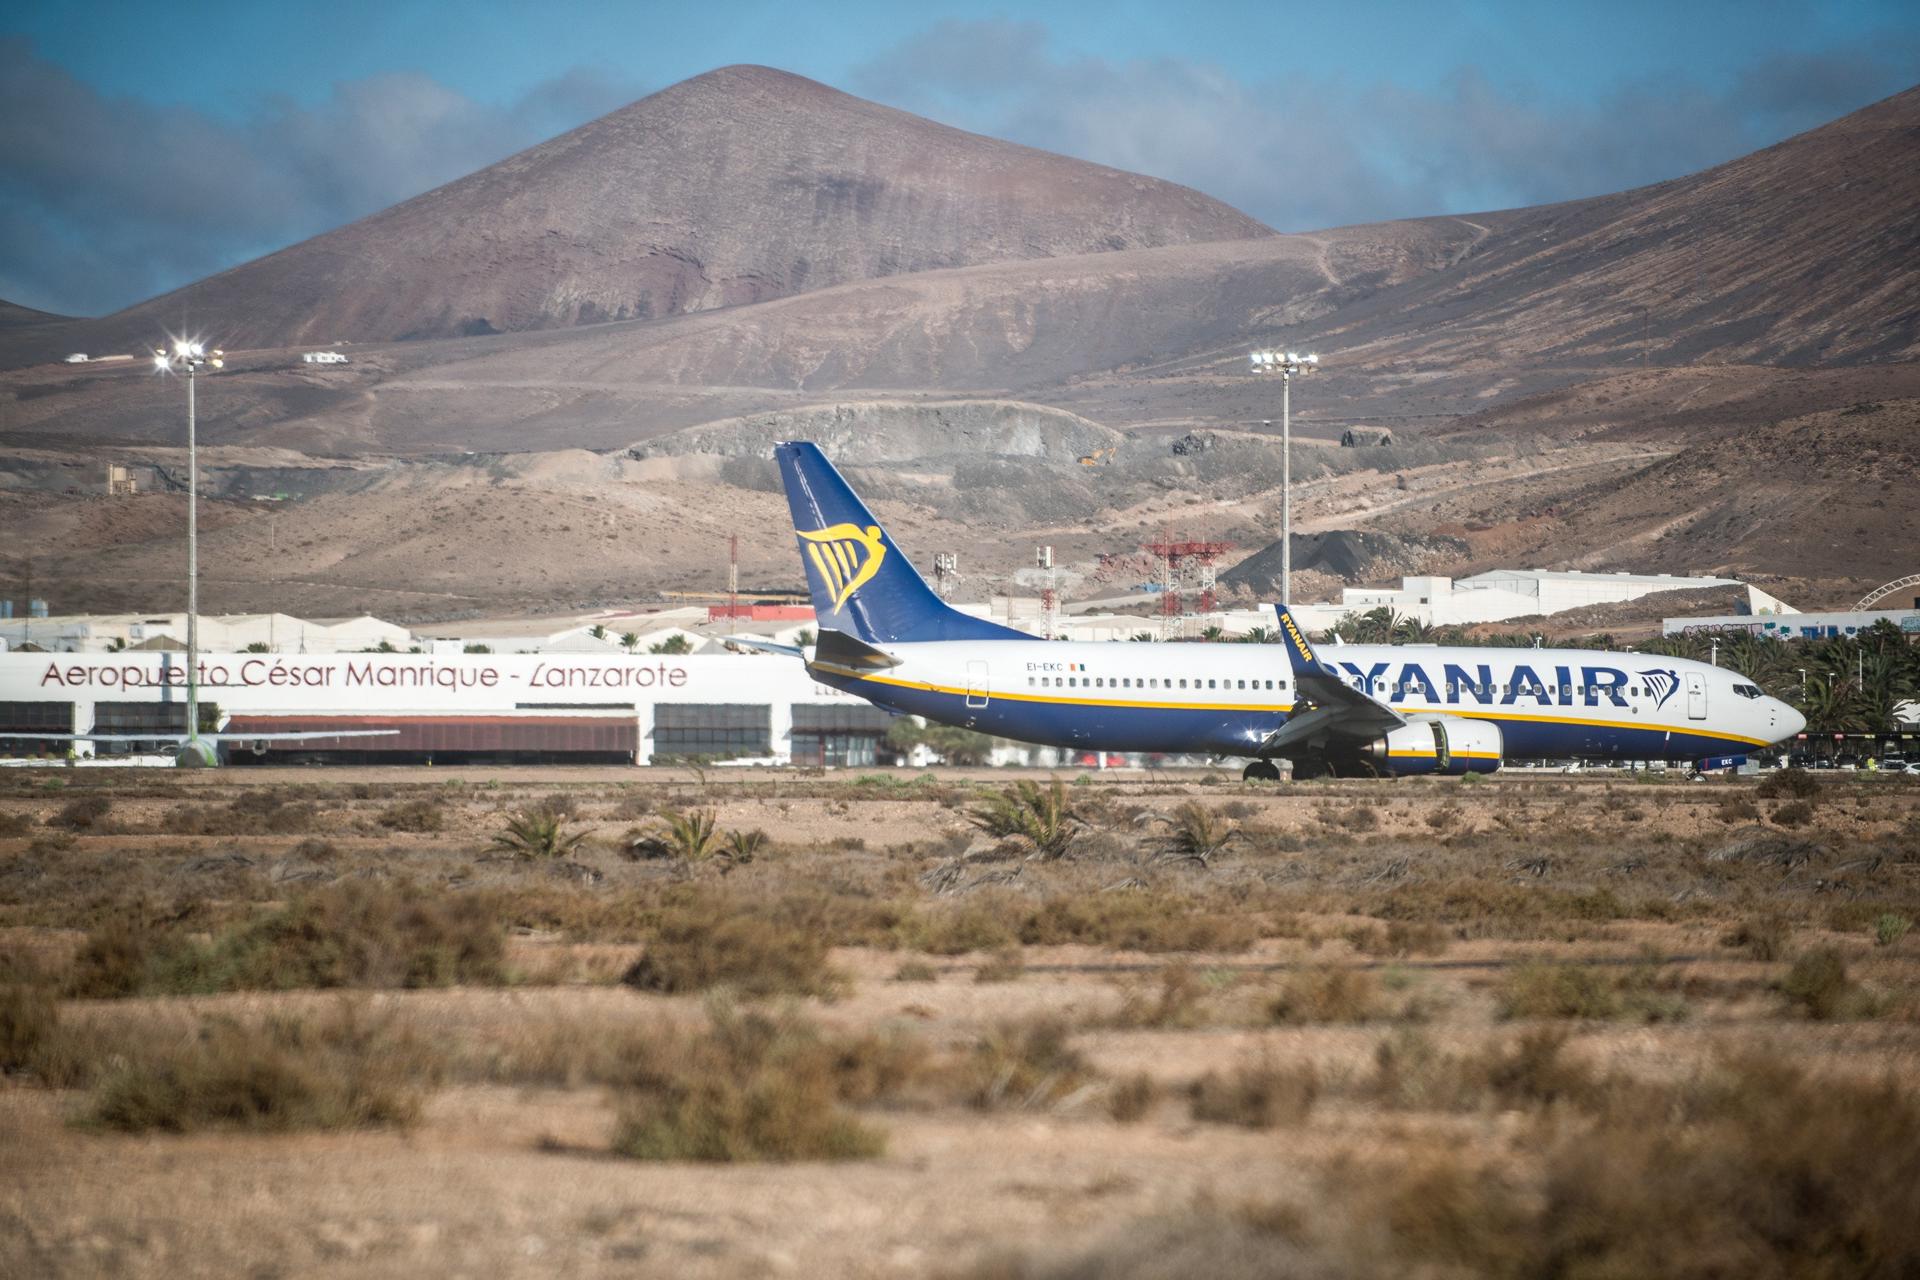 Foto de archivo del aeropuerto de Lanzarote-César Manrique. EFE/Javier Fuentes